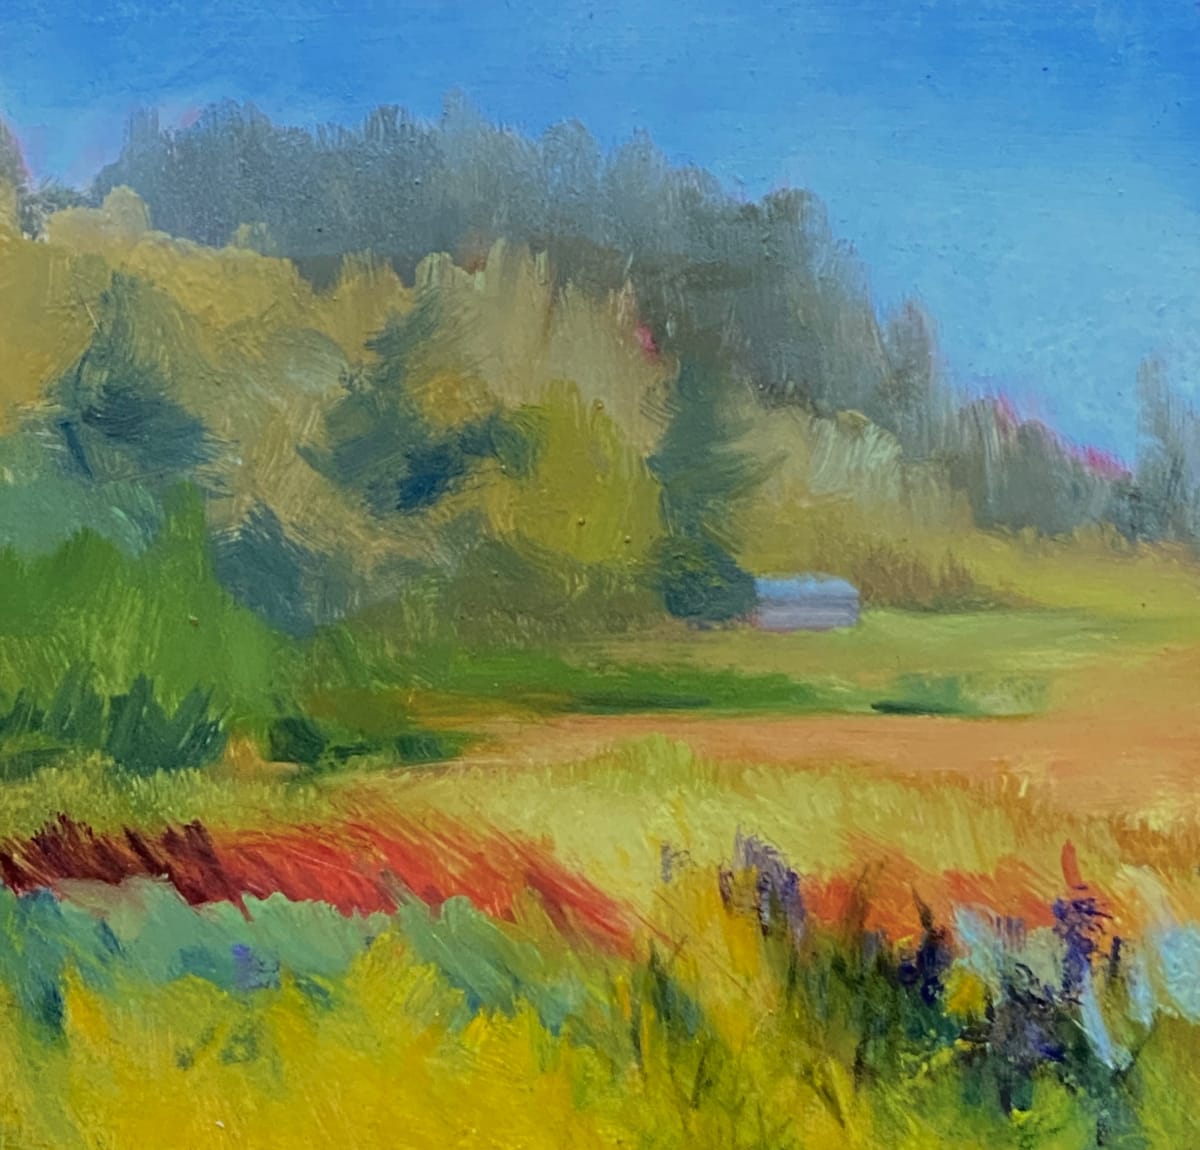 Across the Meadow by Joan Brady  Image: Across the Meadow, Monhegan